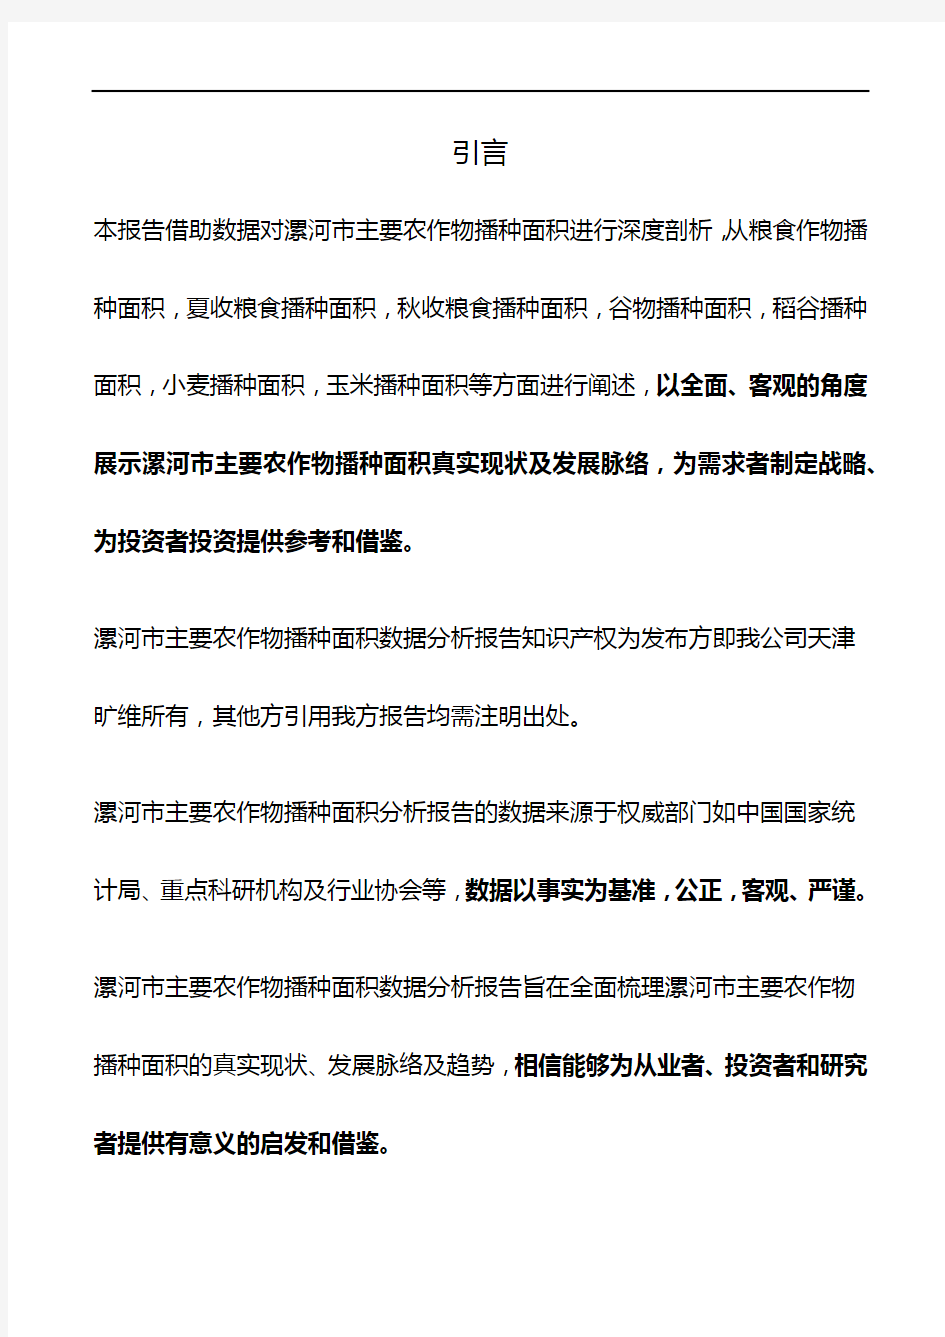 河南省漯河市主要农作物播种面积数据分析报告2019版